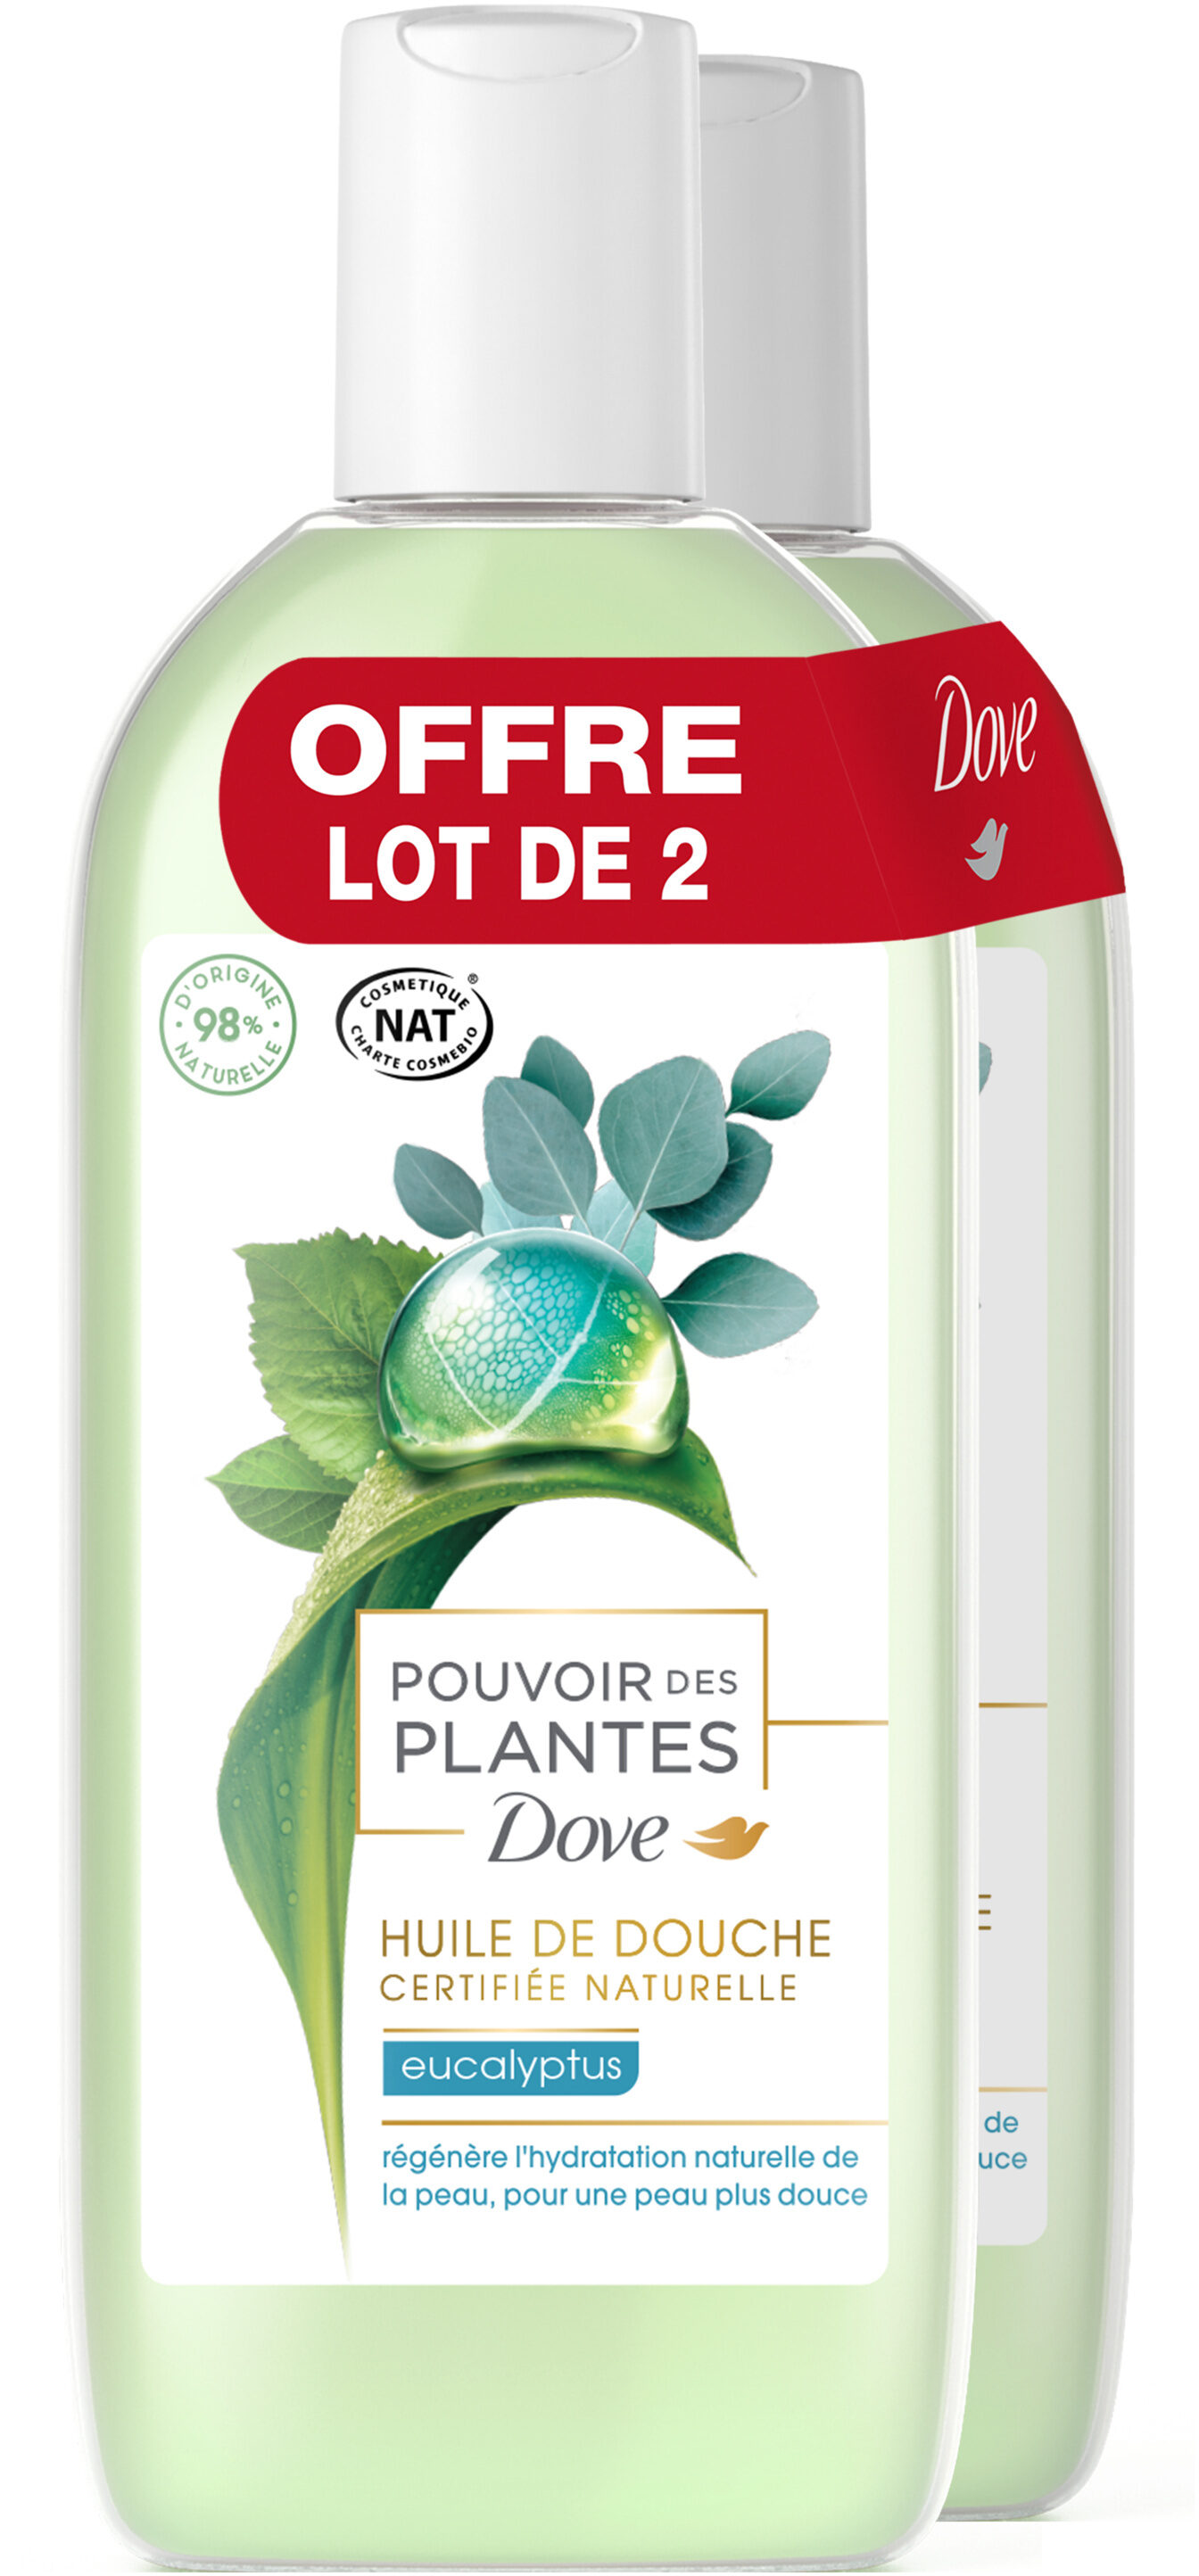 DOVE Gel Douche Pouvoir des Plantes Eucalyptus 2x250ml - Produit - fr